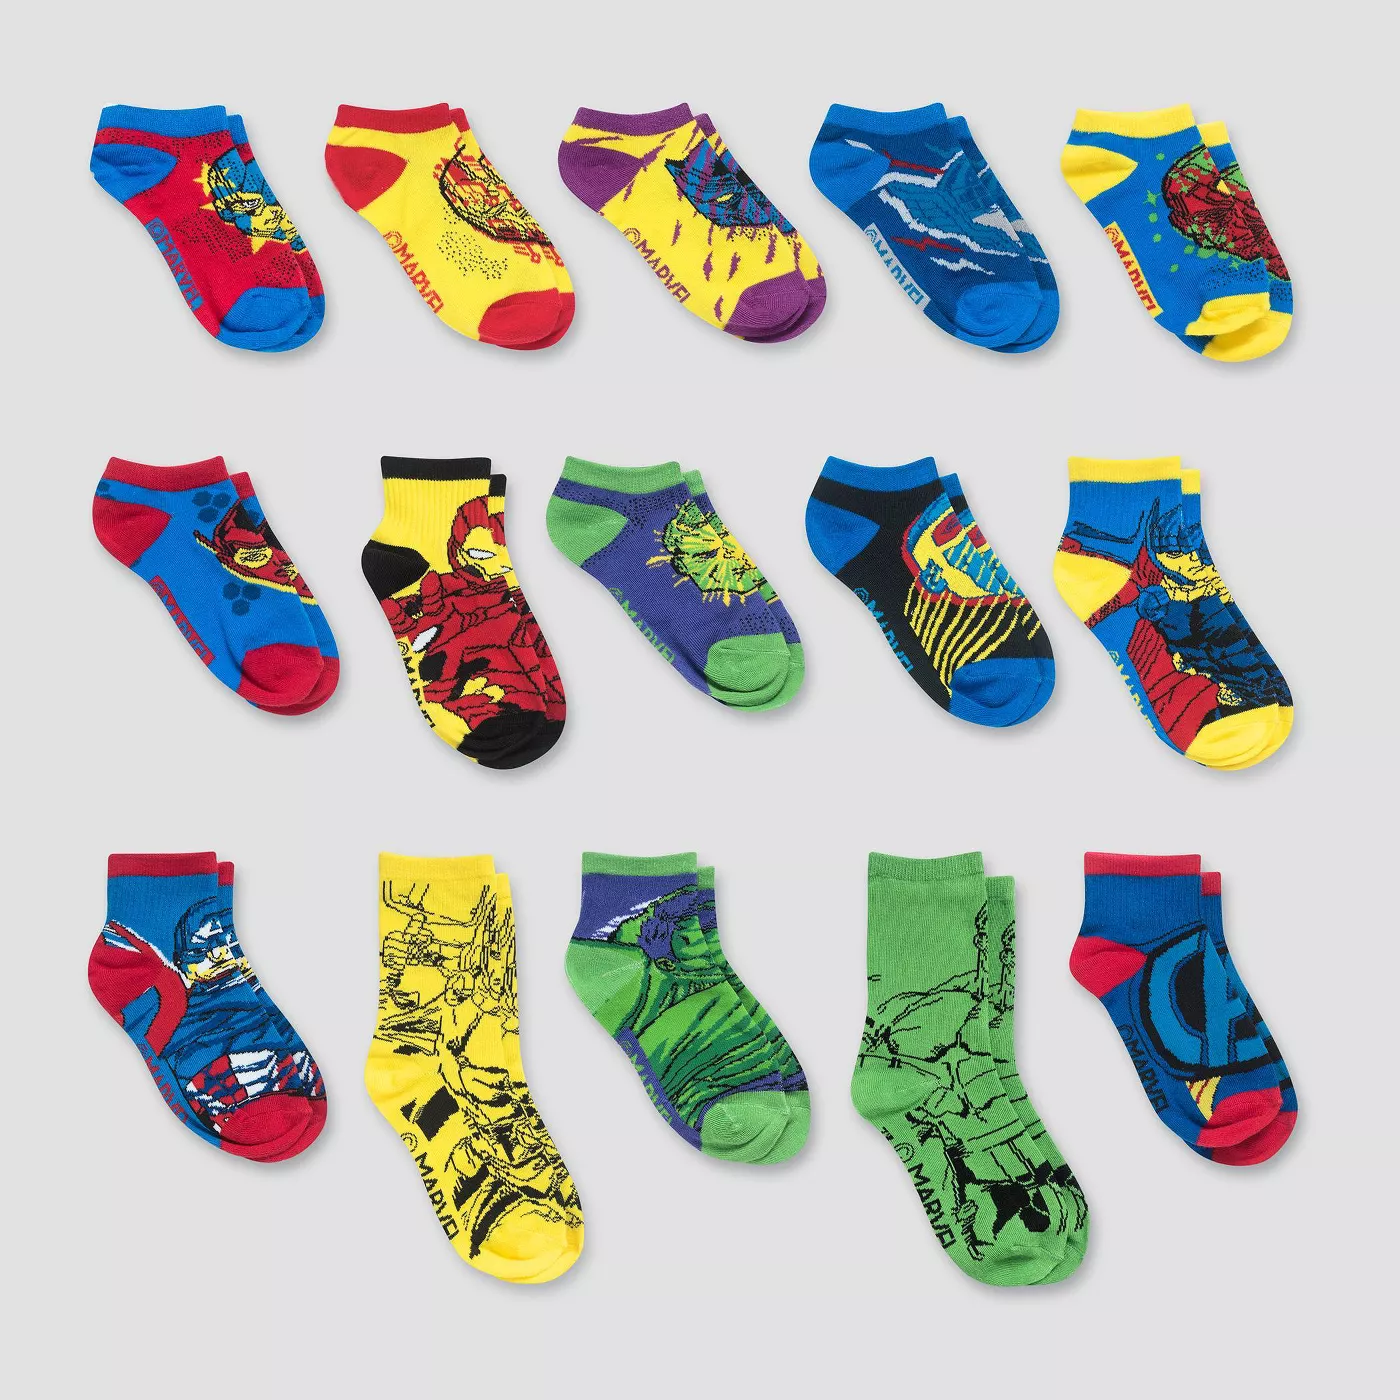 2020 Target Marvel Socks Advent Calendar Available Now! Hello